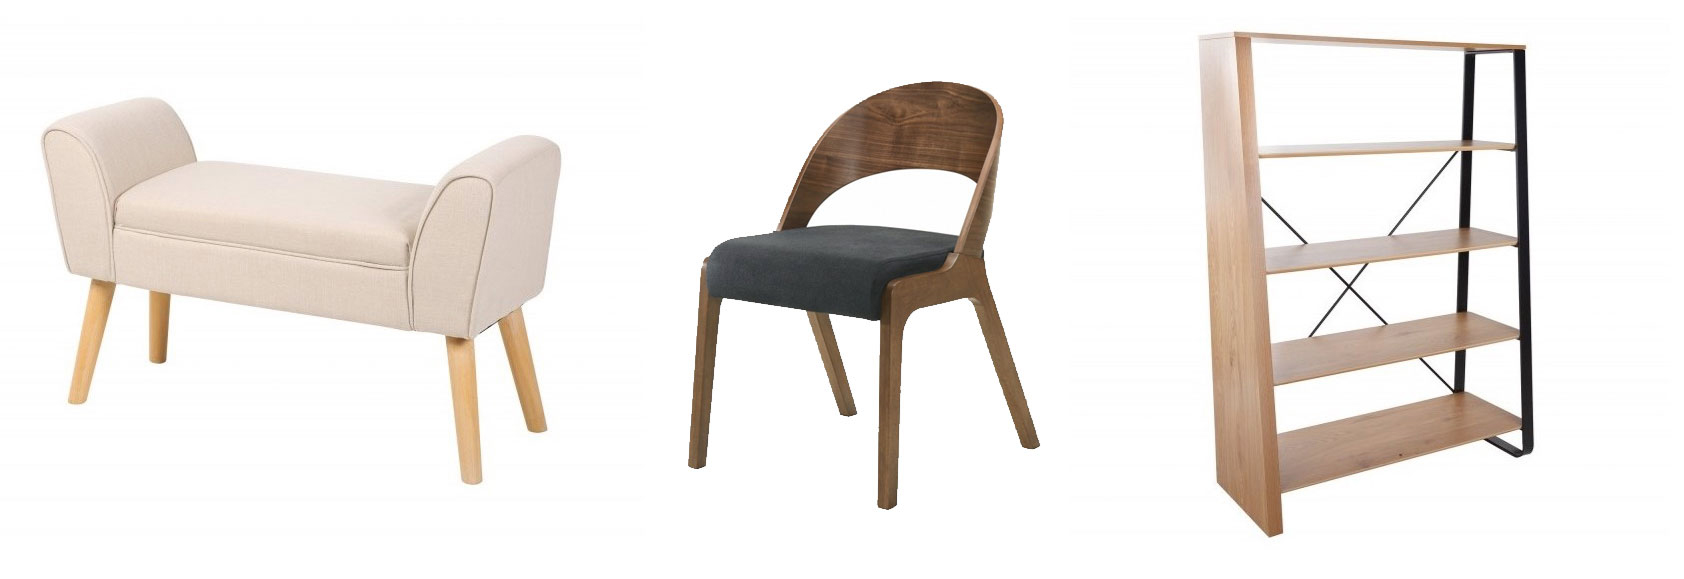 Dizajnová škandinávska lavica Karen bielej farby, Štýlová škandinávska jedálenská stolička Nordica Nogal z dreva, Škandinávsky drevený regál Linden s kovovou konštrukciou